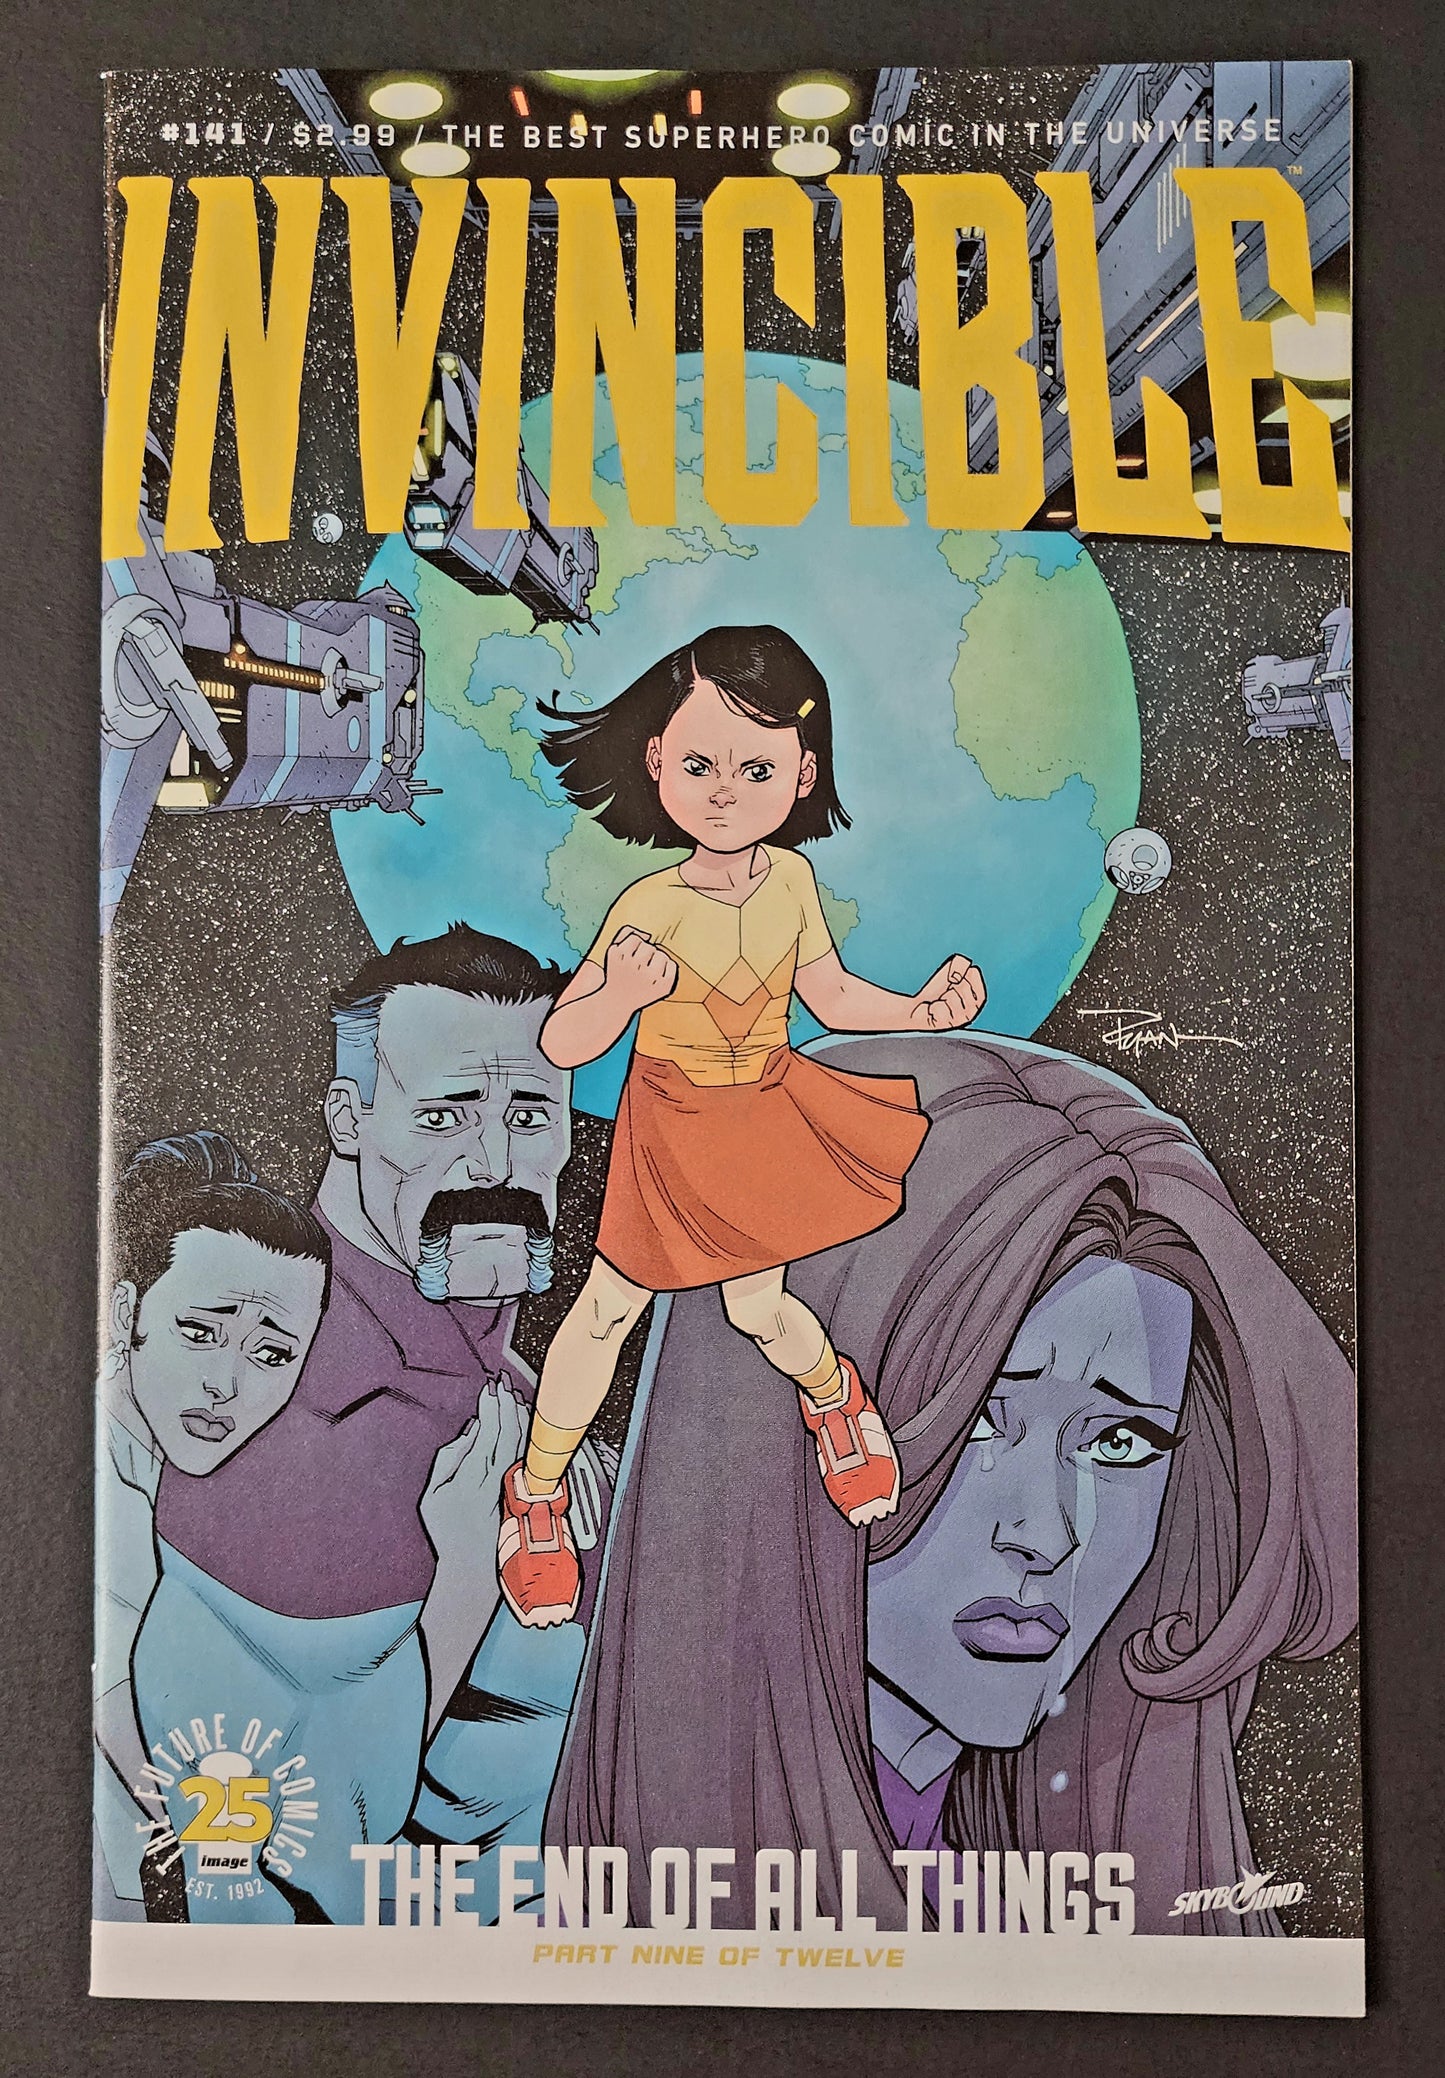 Invincible #141 (NM)